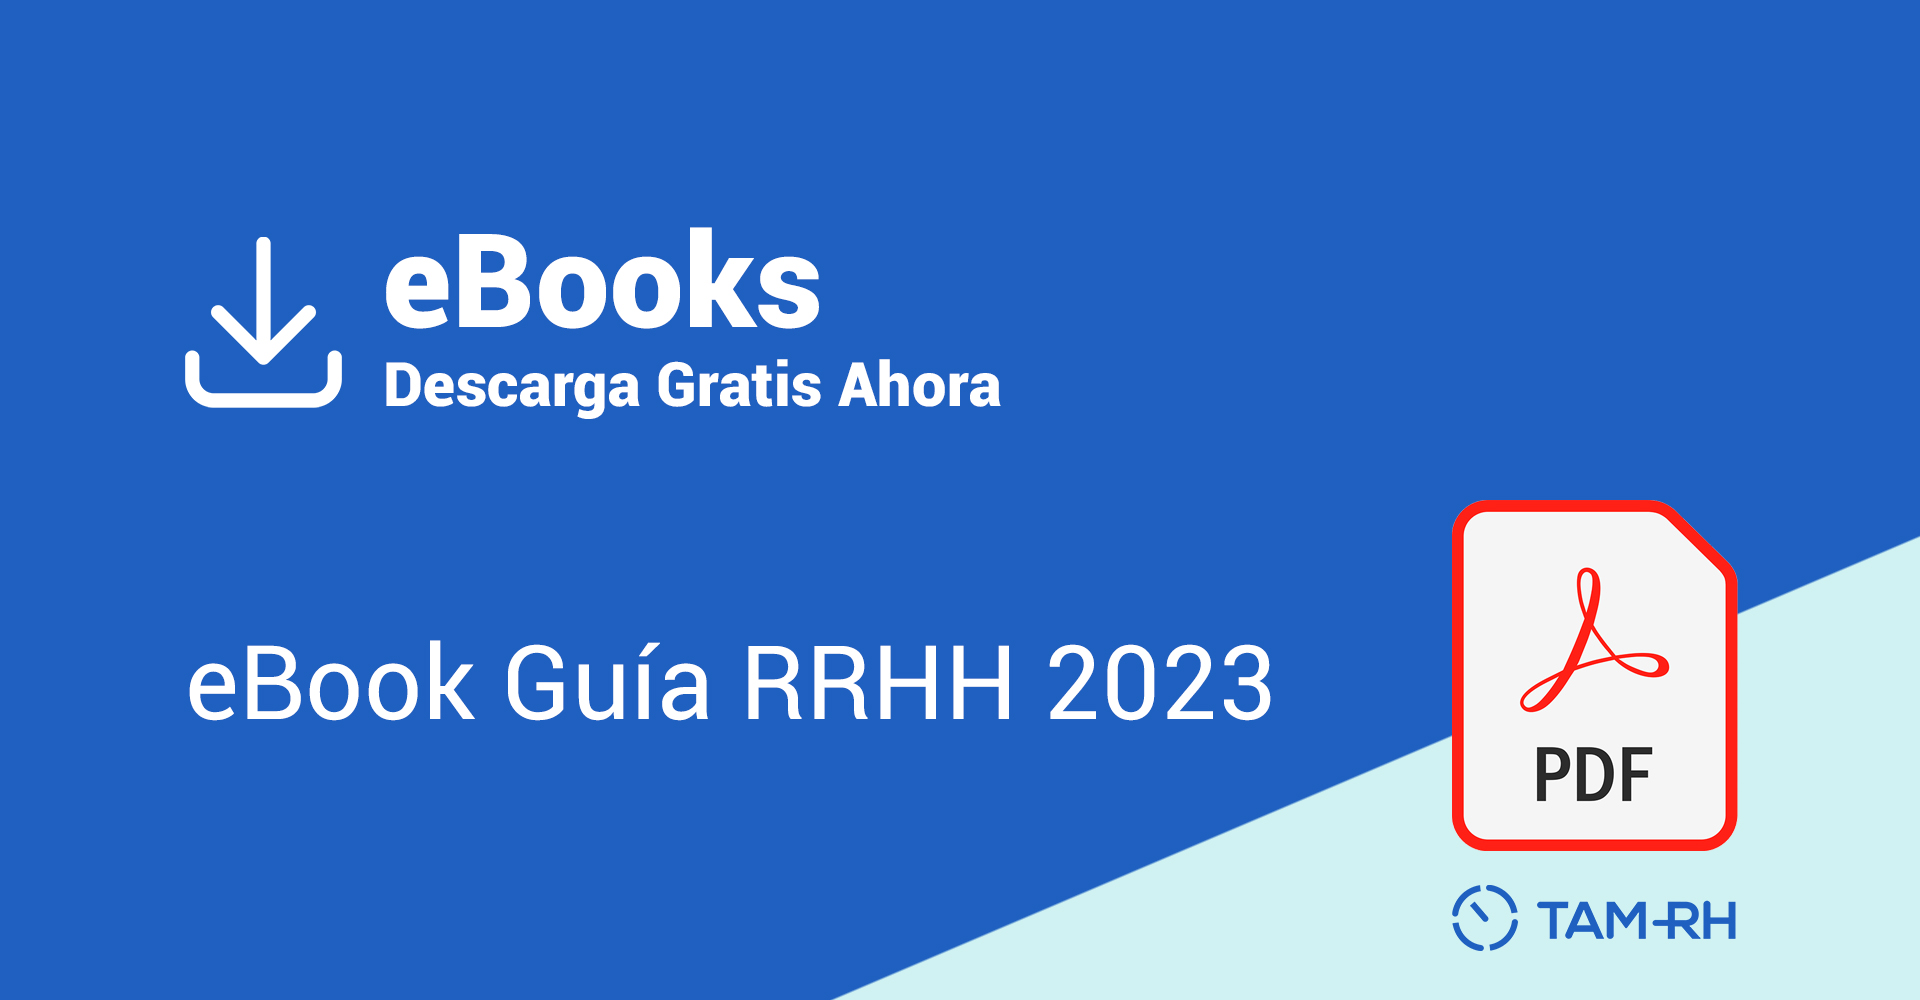 ebook guia rrhh 2023